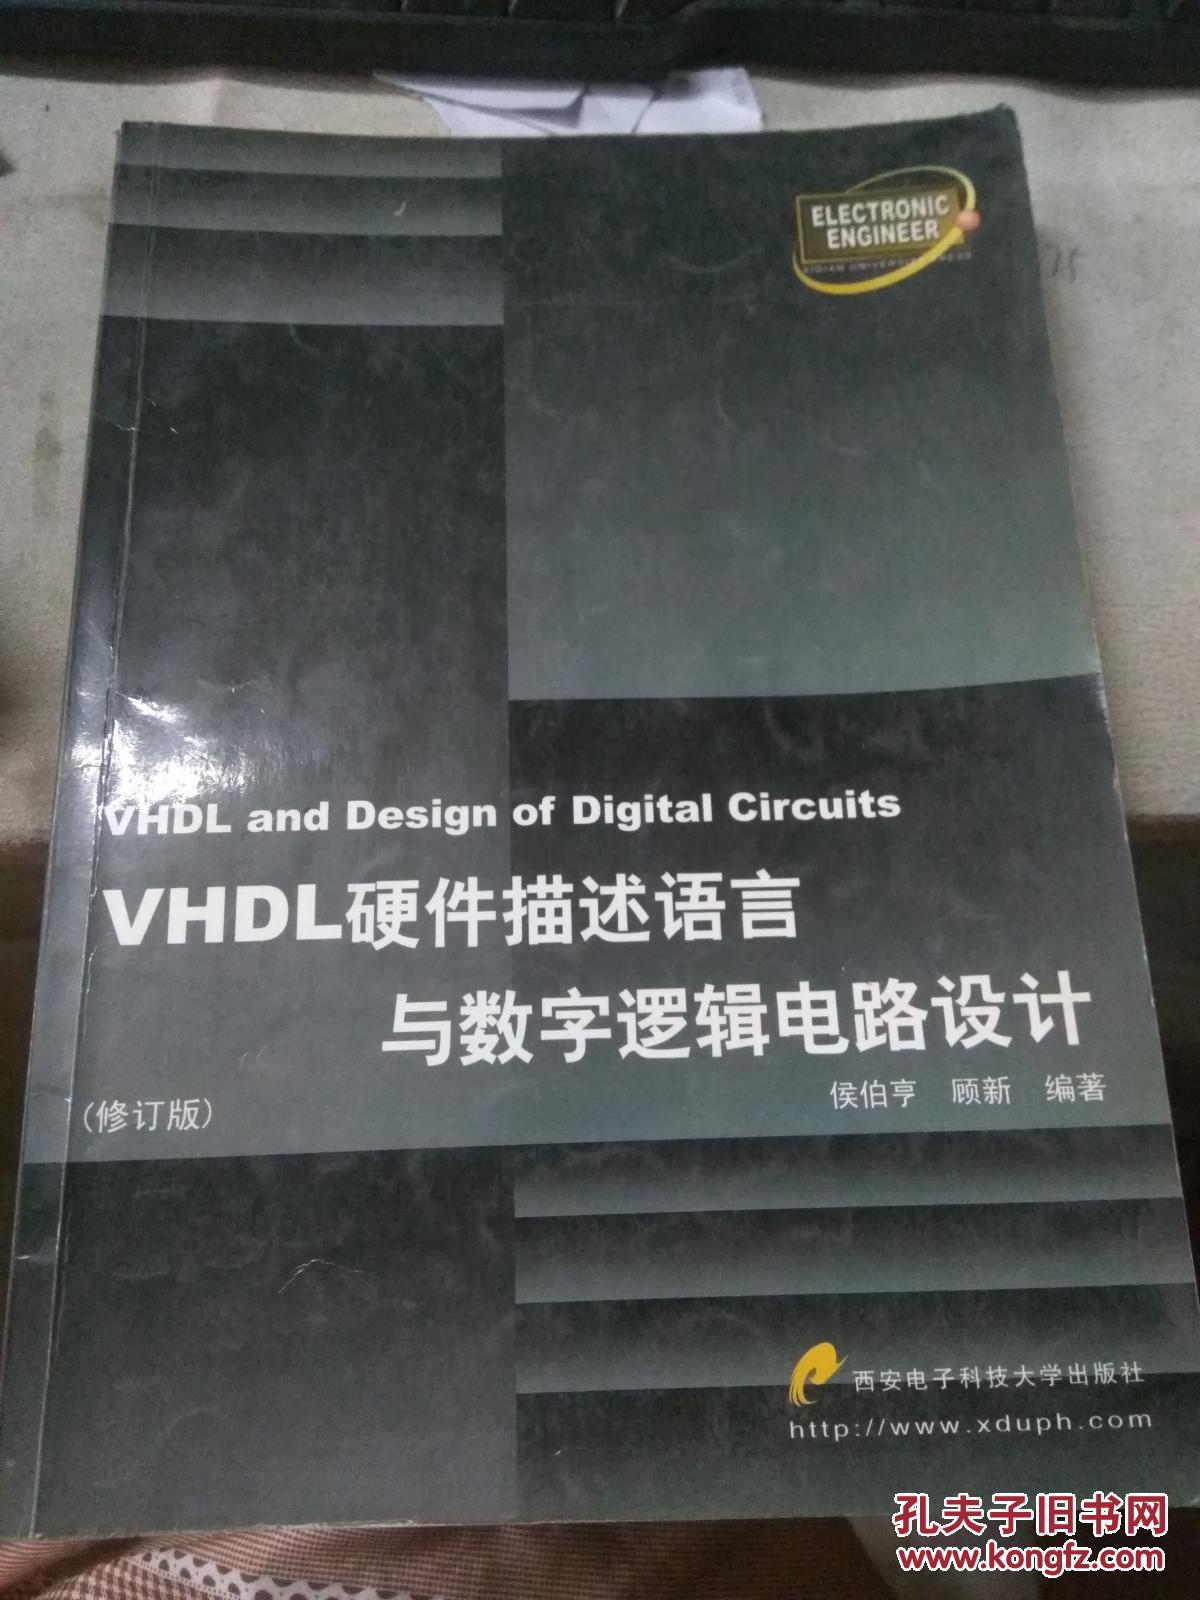 【图】VHDL硬件描述语言与数字逻辑电路设计